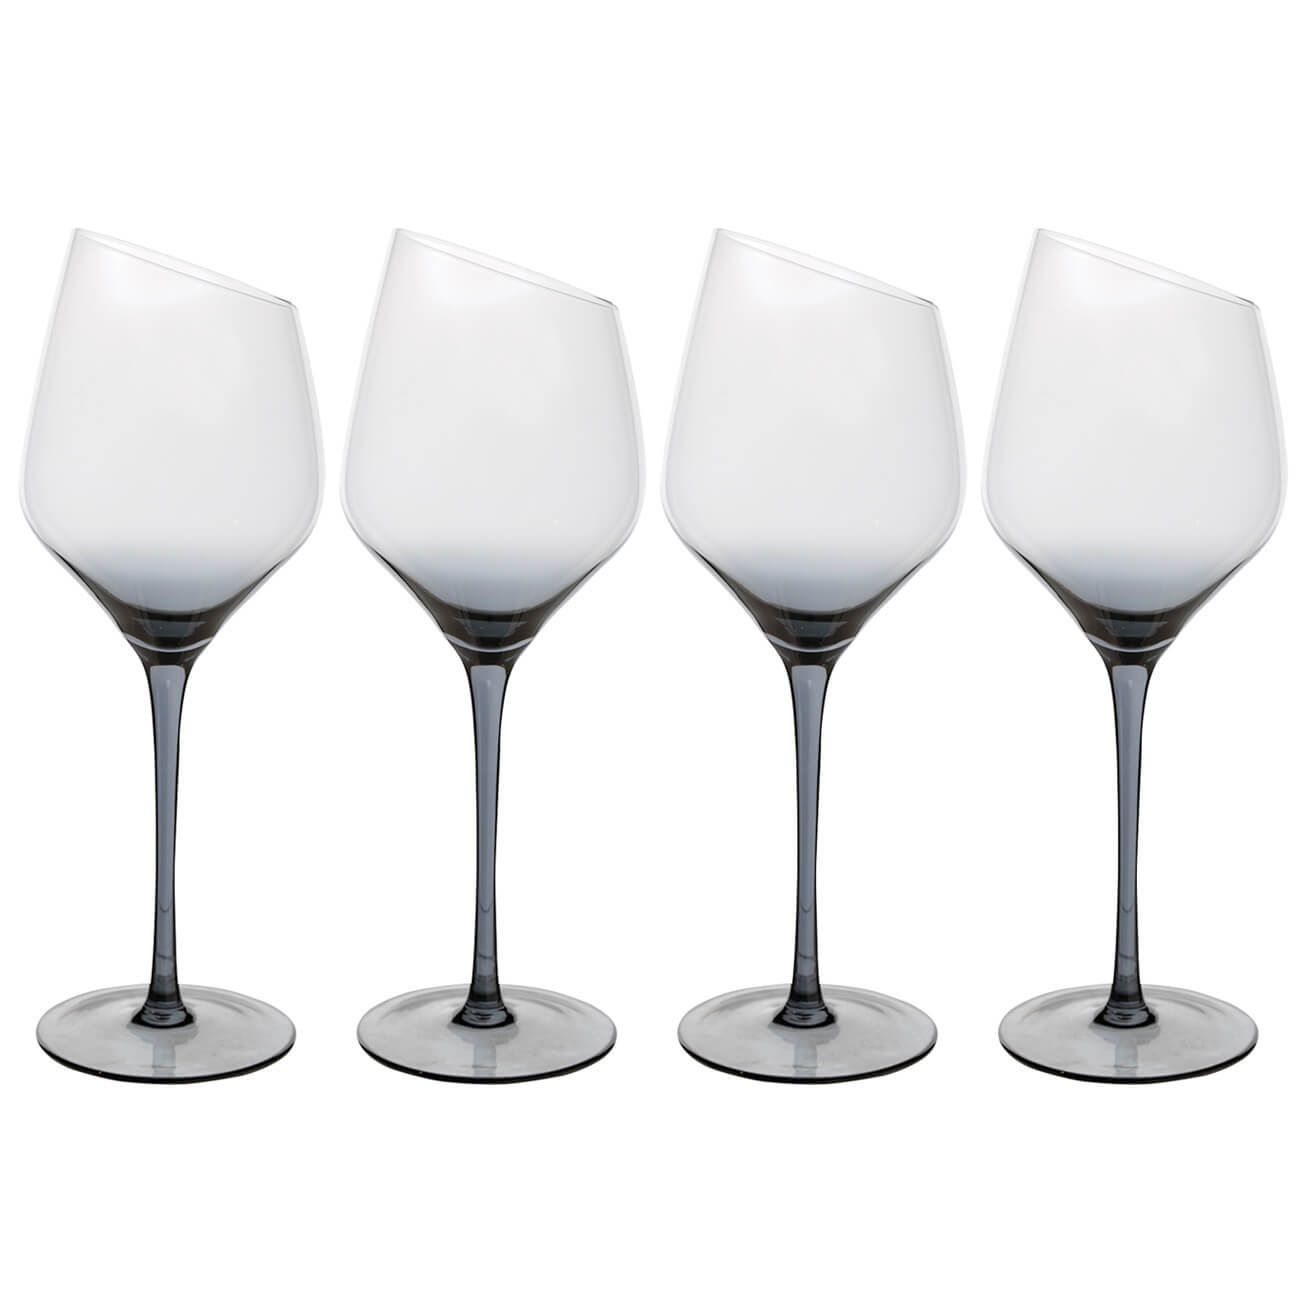 Бокал для белого вина, 460 мл, 4 шт, стекло, серый, Charm L Color бокал для белого вина 460 мл 4 шт charm l